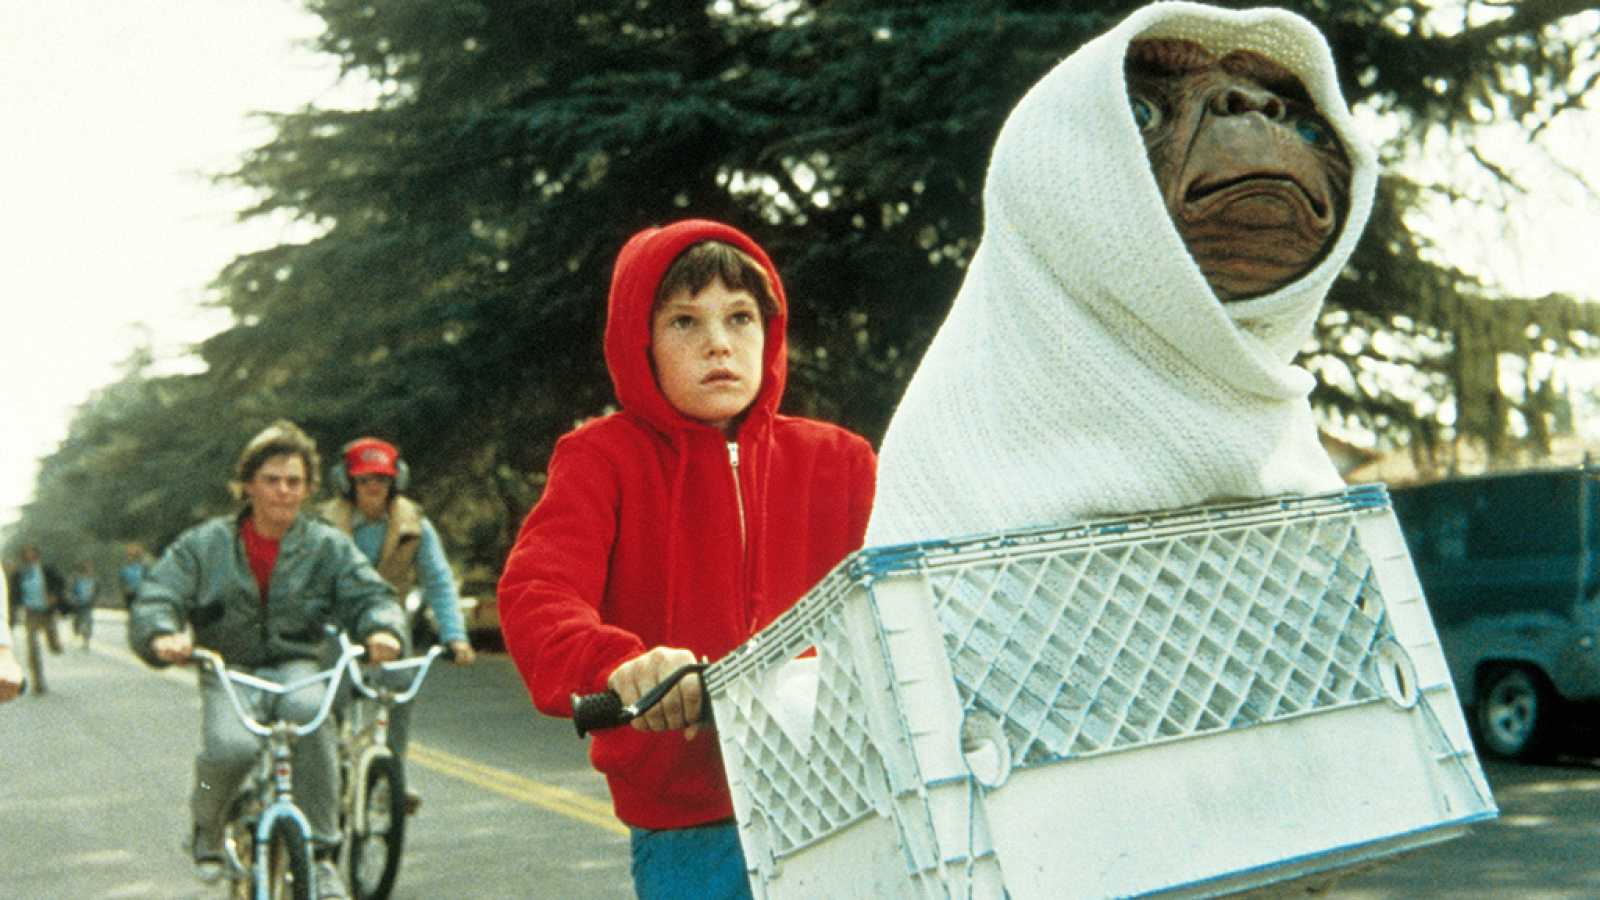 Cine de ciencia ficción: E. T. El extraterrestre